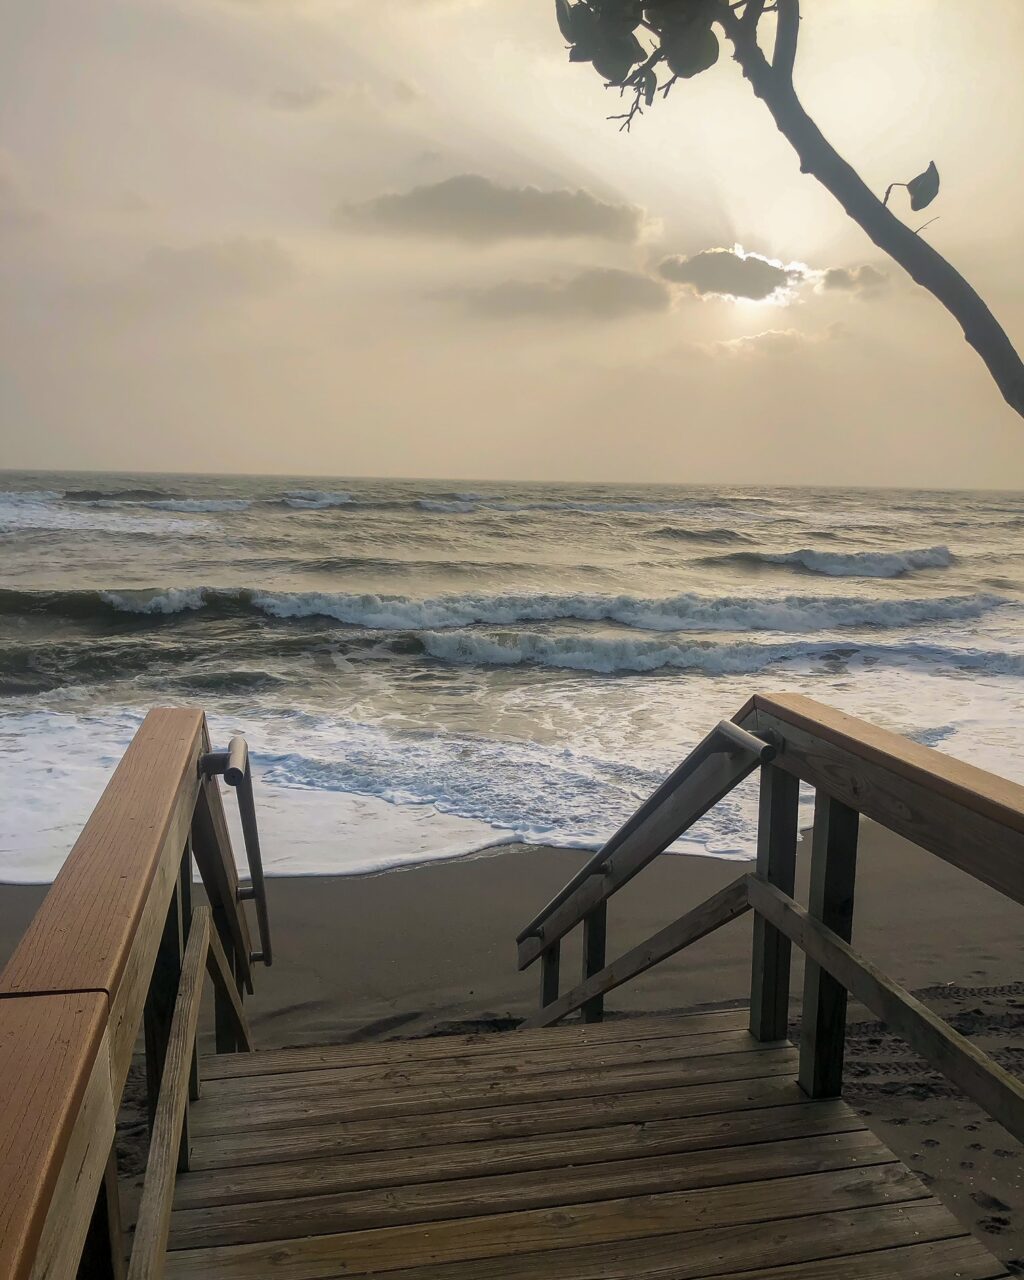 stairway to the ocean water